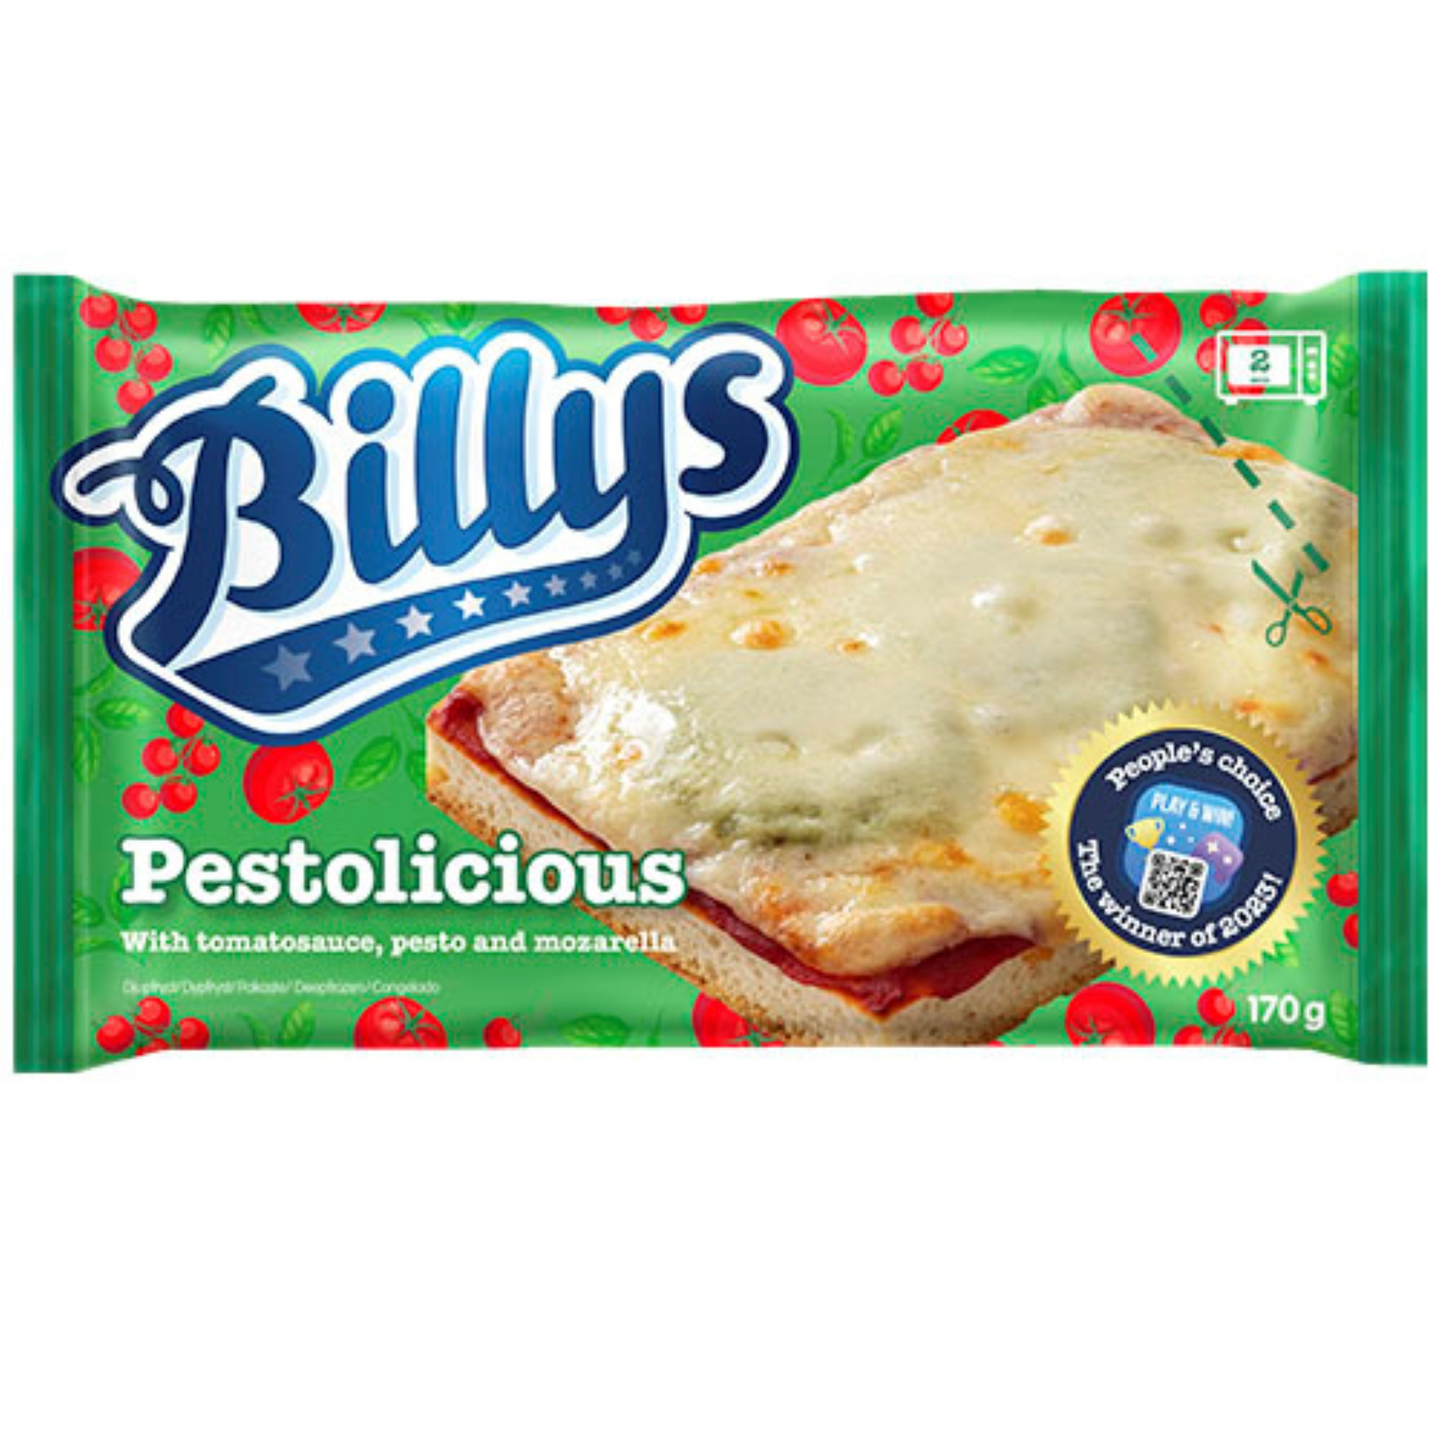 Billy's pan Pizza Pestolicious 170g